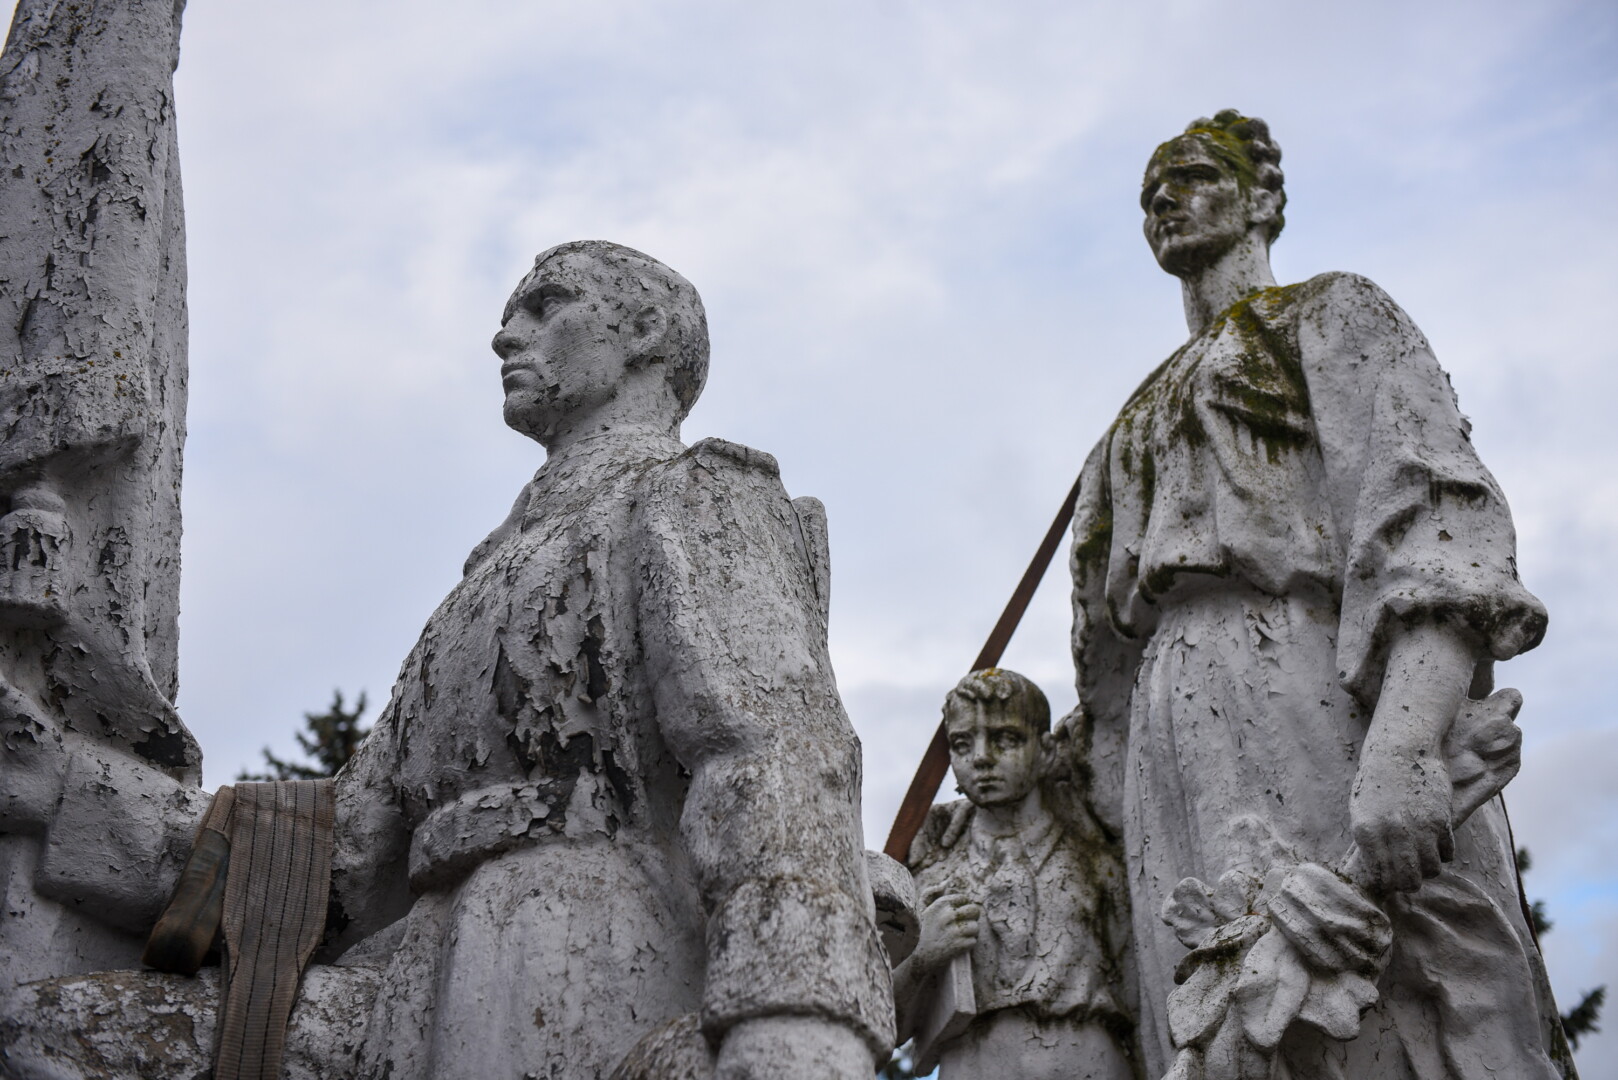 Į Grūto parko muziejų iš Panevėžio išvežtos trys ideologinį užtaisą turinčios sovietmečio statulos kol kas paslėptos nuo žmonių akių.